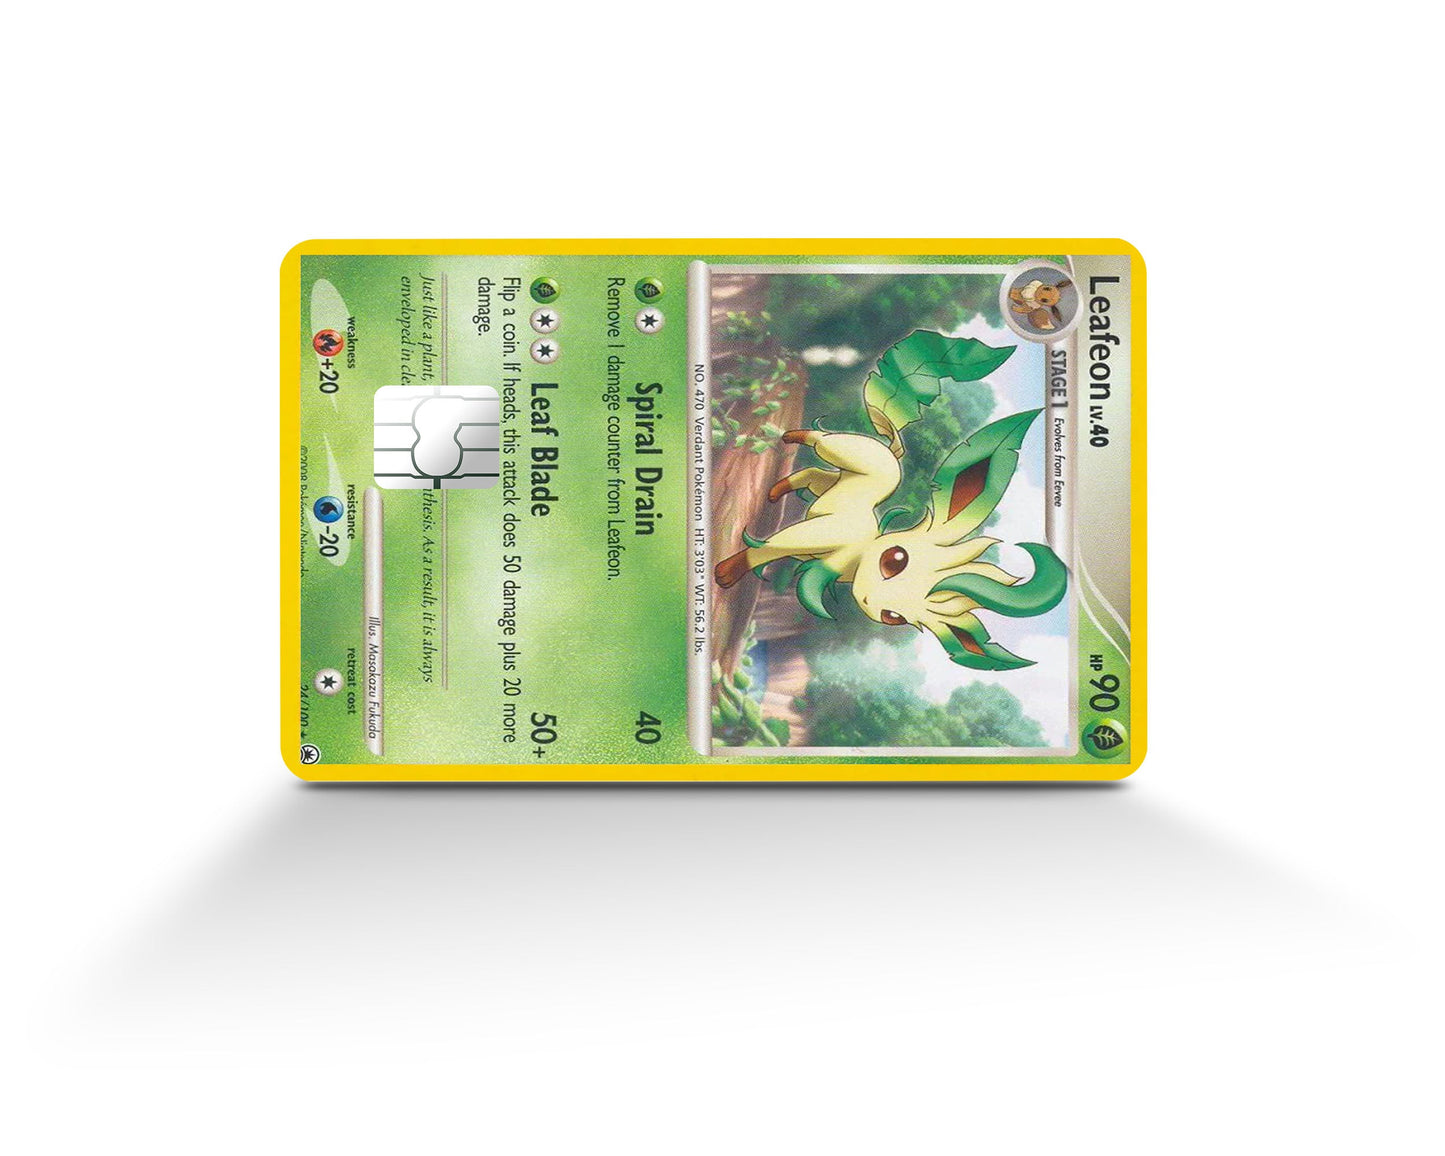 Leafeon LV.X Prices  Pokemon Card Prices